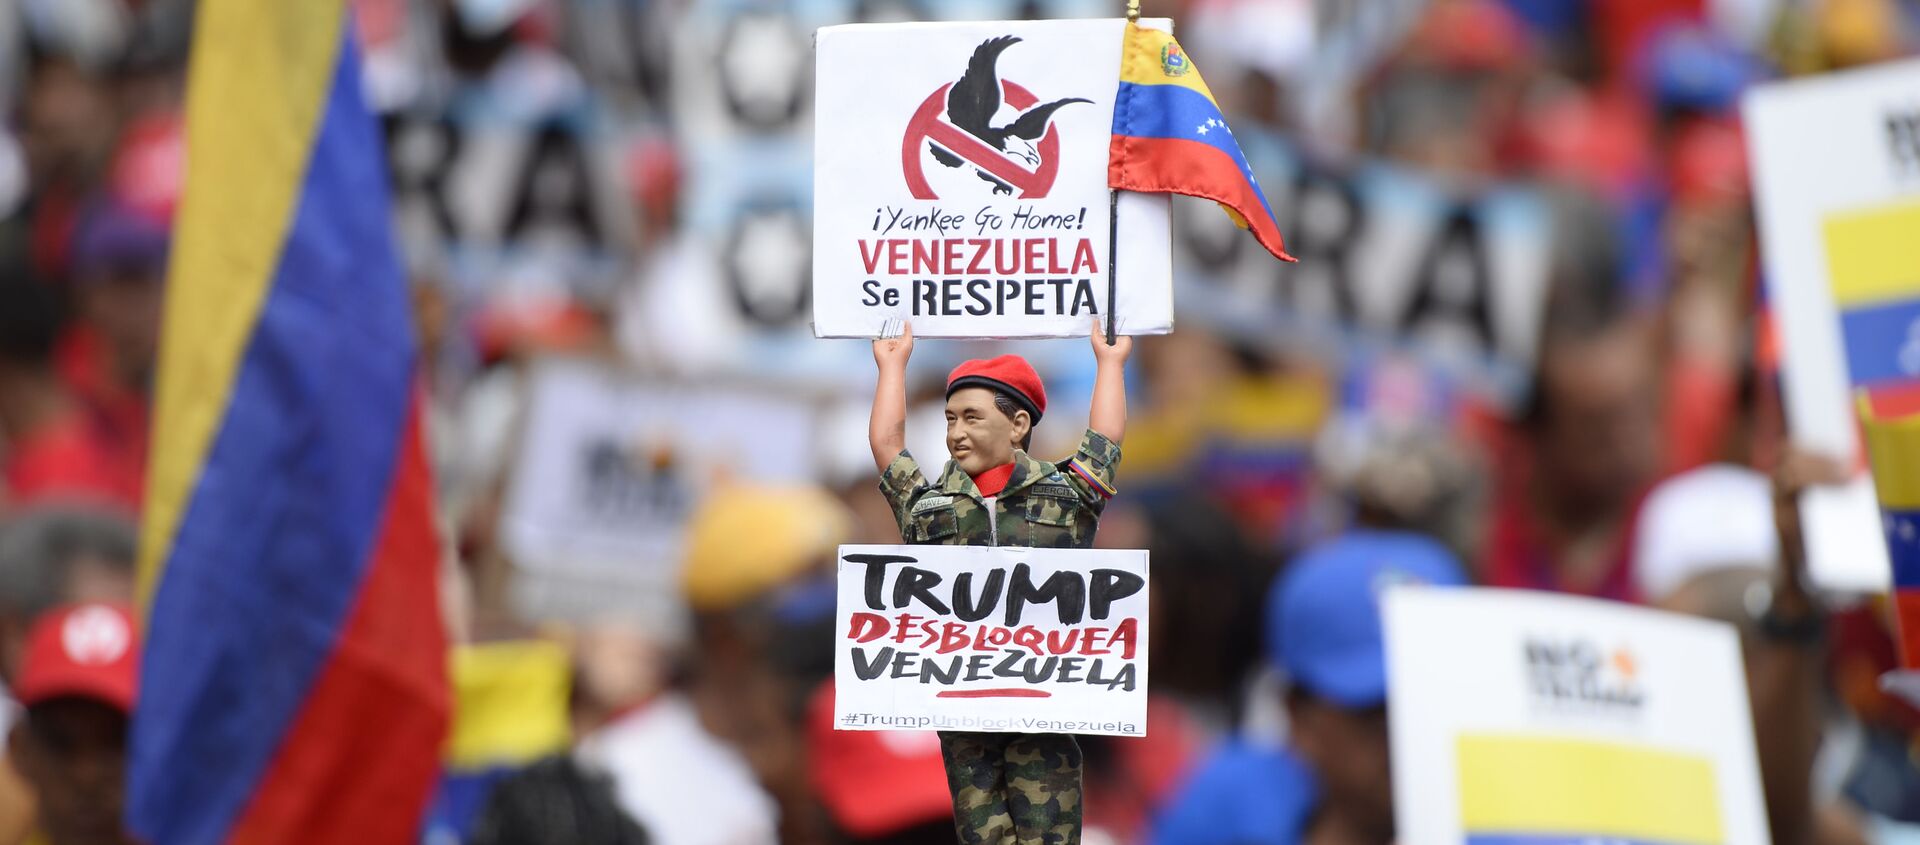 Manifestación en apoyo al presidente Nicolás Maduro y en contra del imperialismo estadounidense. Caracas,  31 de agosto de 2019. - Sputnik Mundo, 1920, 03.12.2020